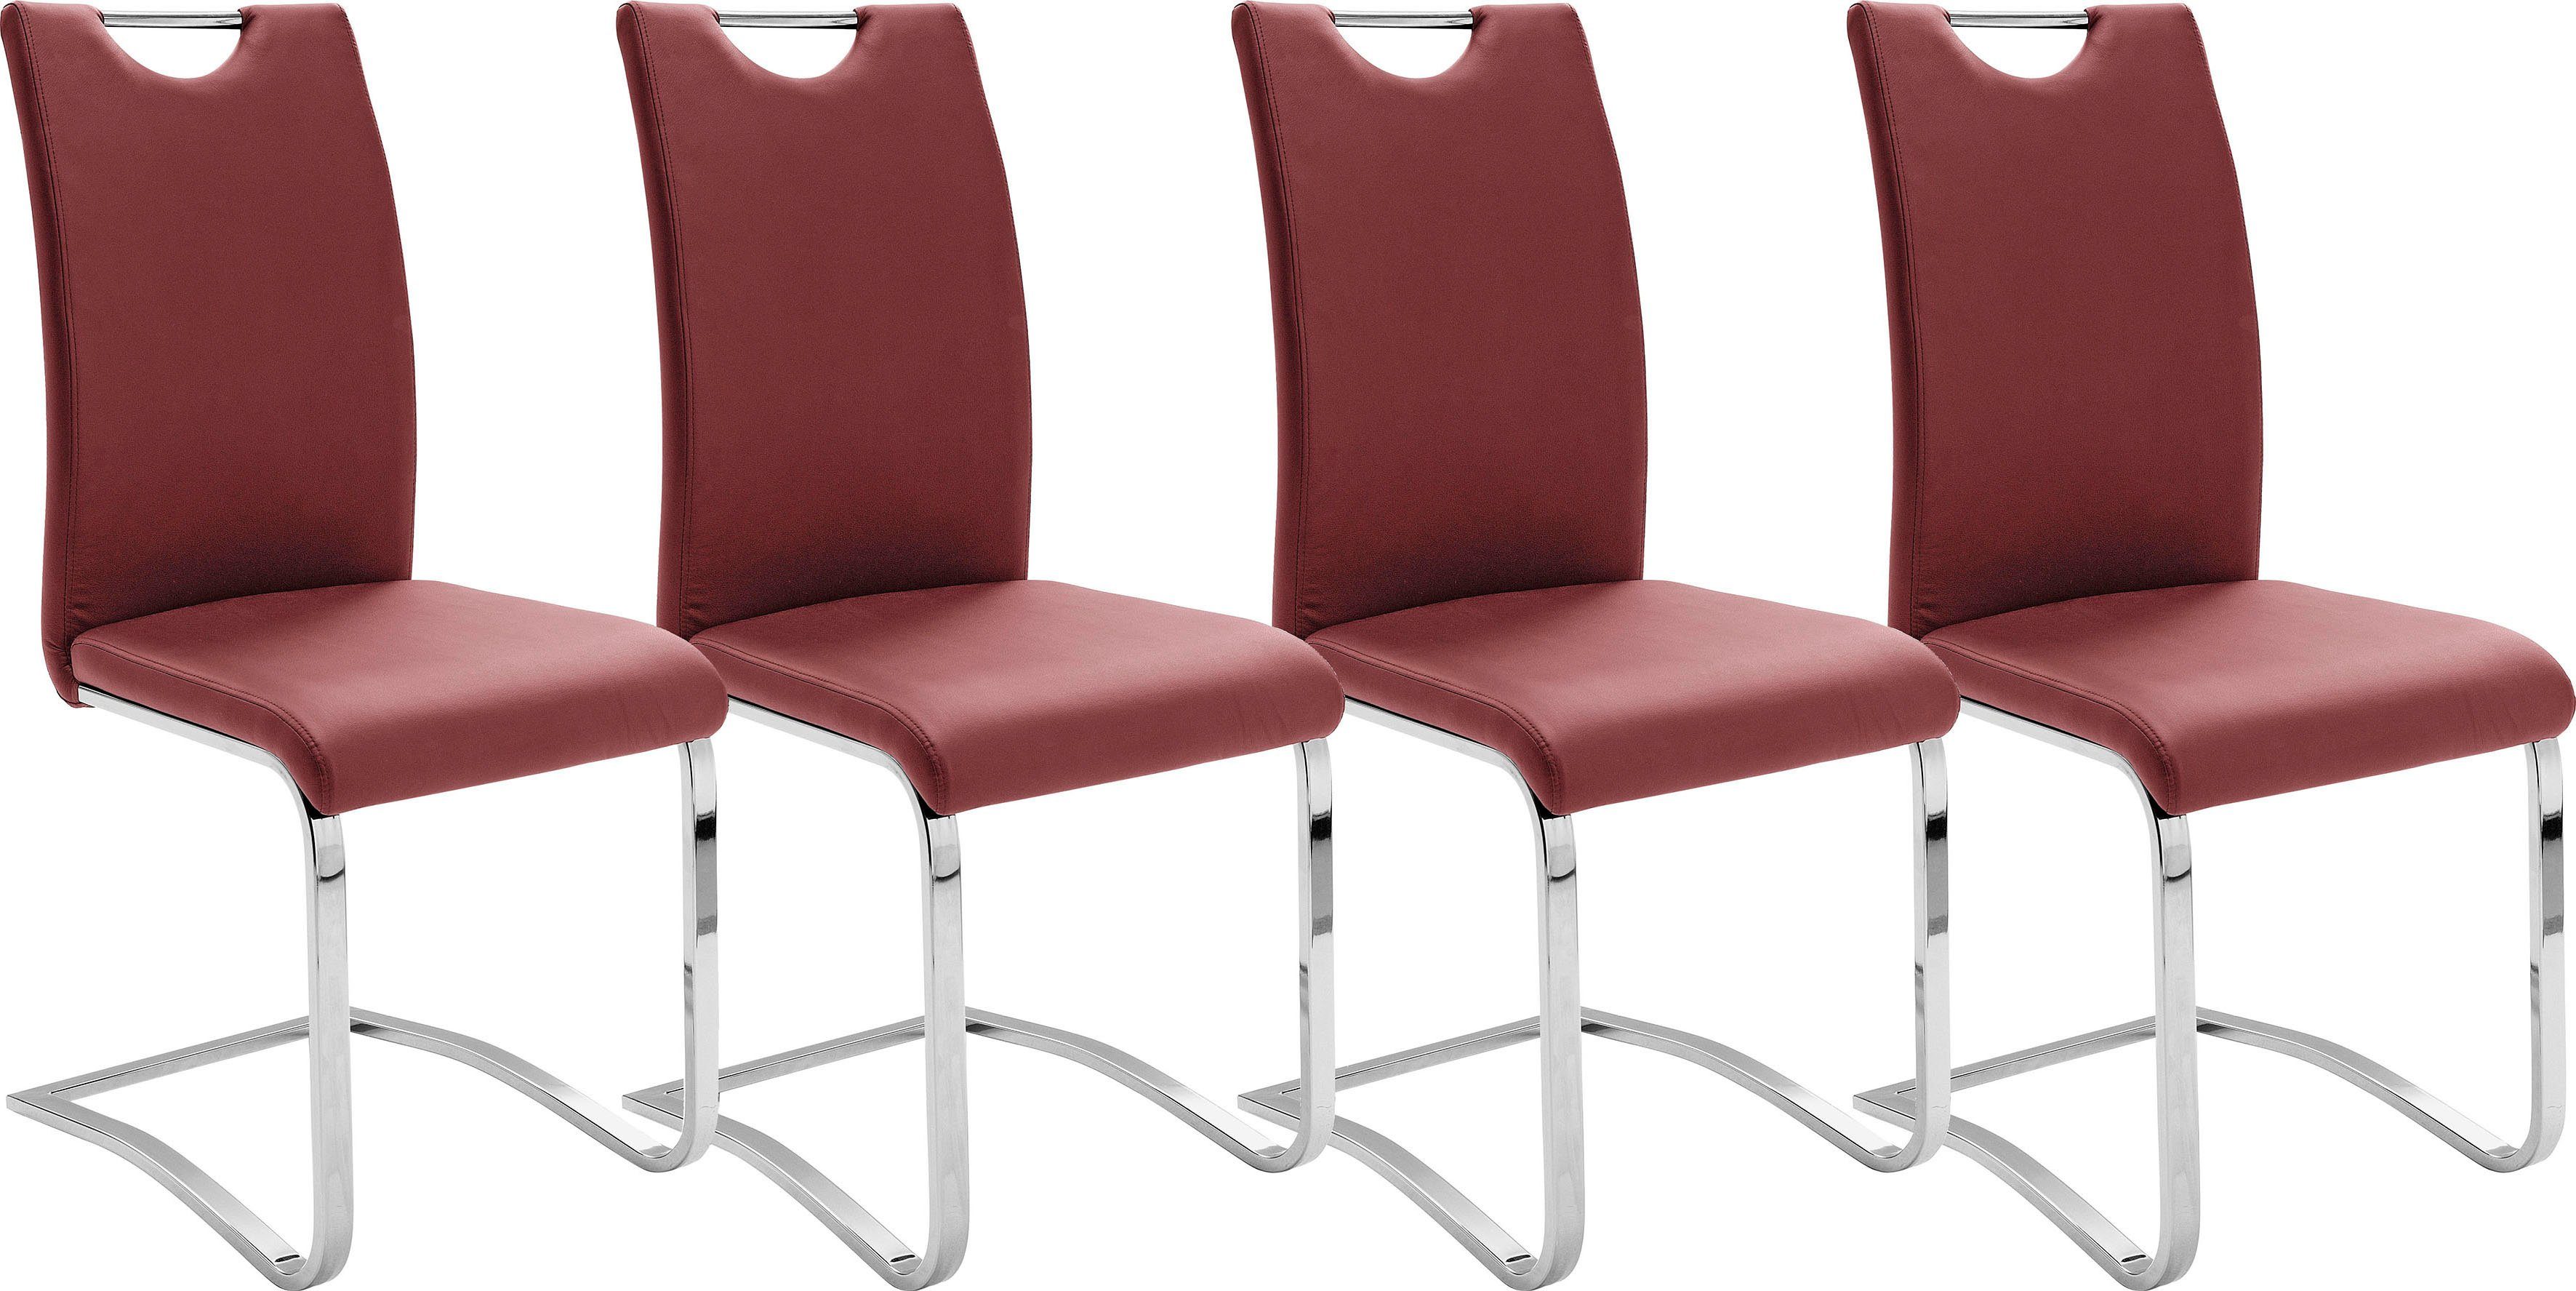 MCA furniture Vrijdragende stoel Keulen (set, 4 stuks)